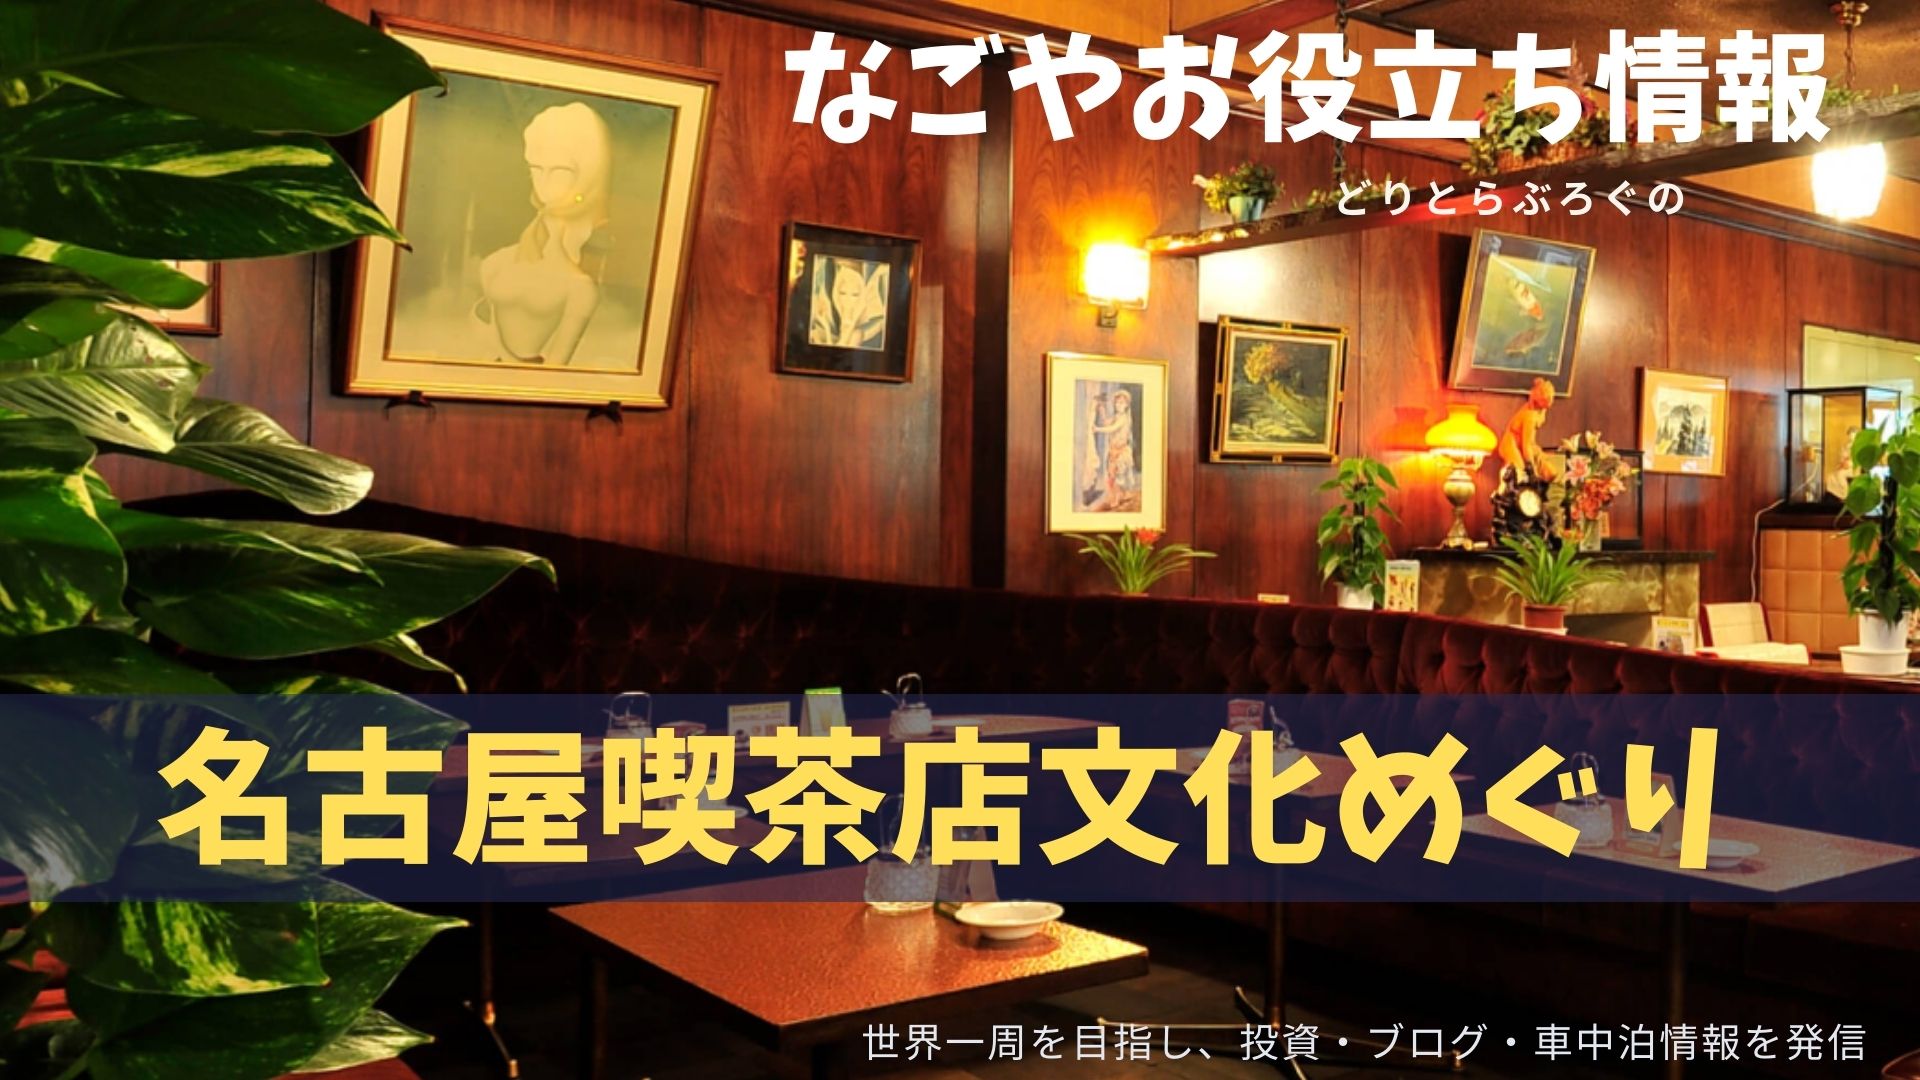 へぇ 日本一喫茶店にお金を使うの 車中泊時に名古屋の喫茶店文化を満喫するおすすめ1日コース どりとらぶろぐ